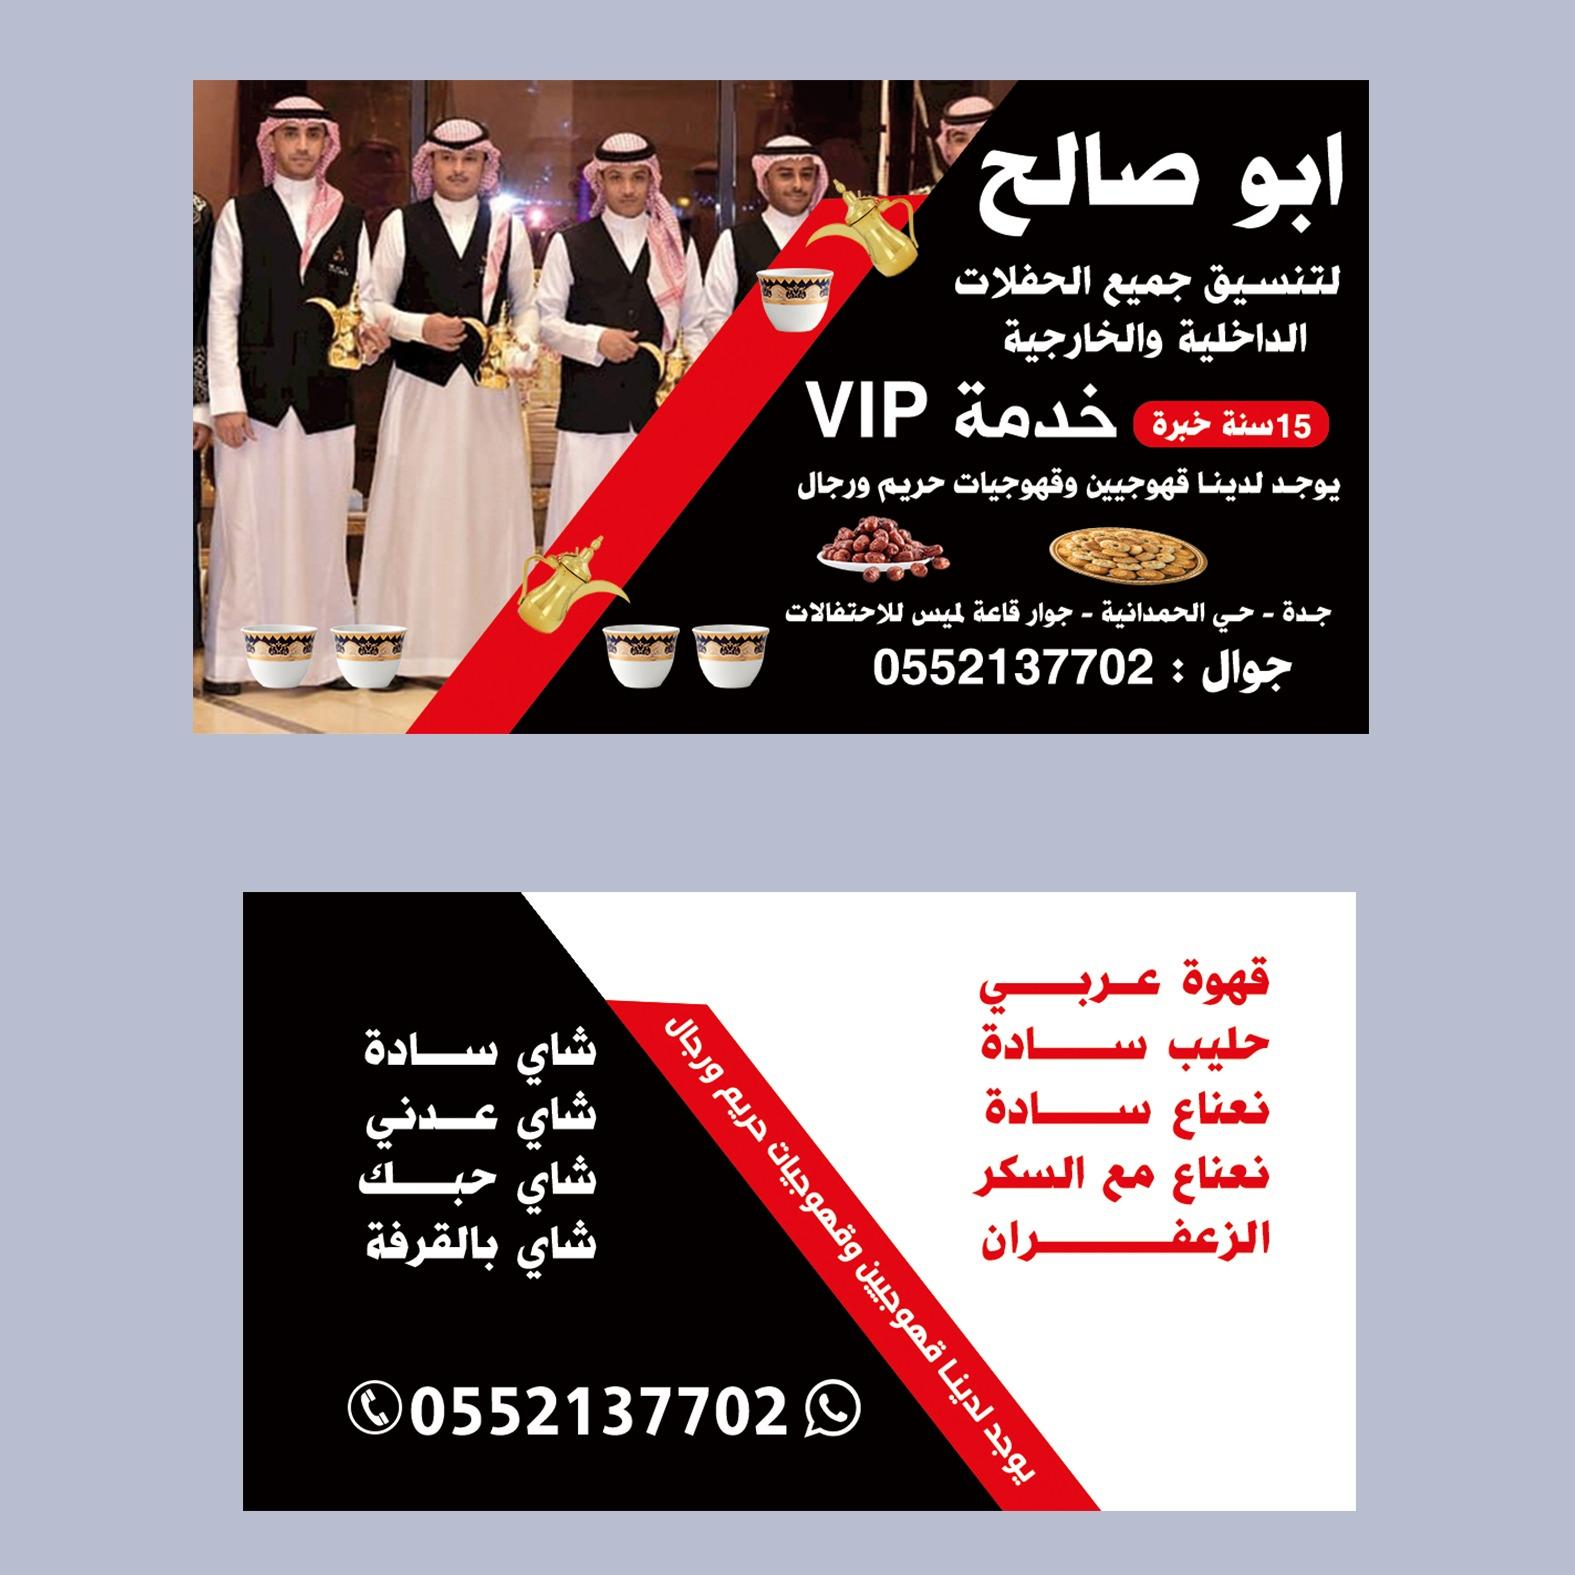 صبابين قهوة و مباشرات ضيافه في جدة,0552137702 871053427